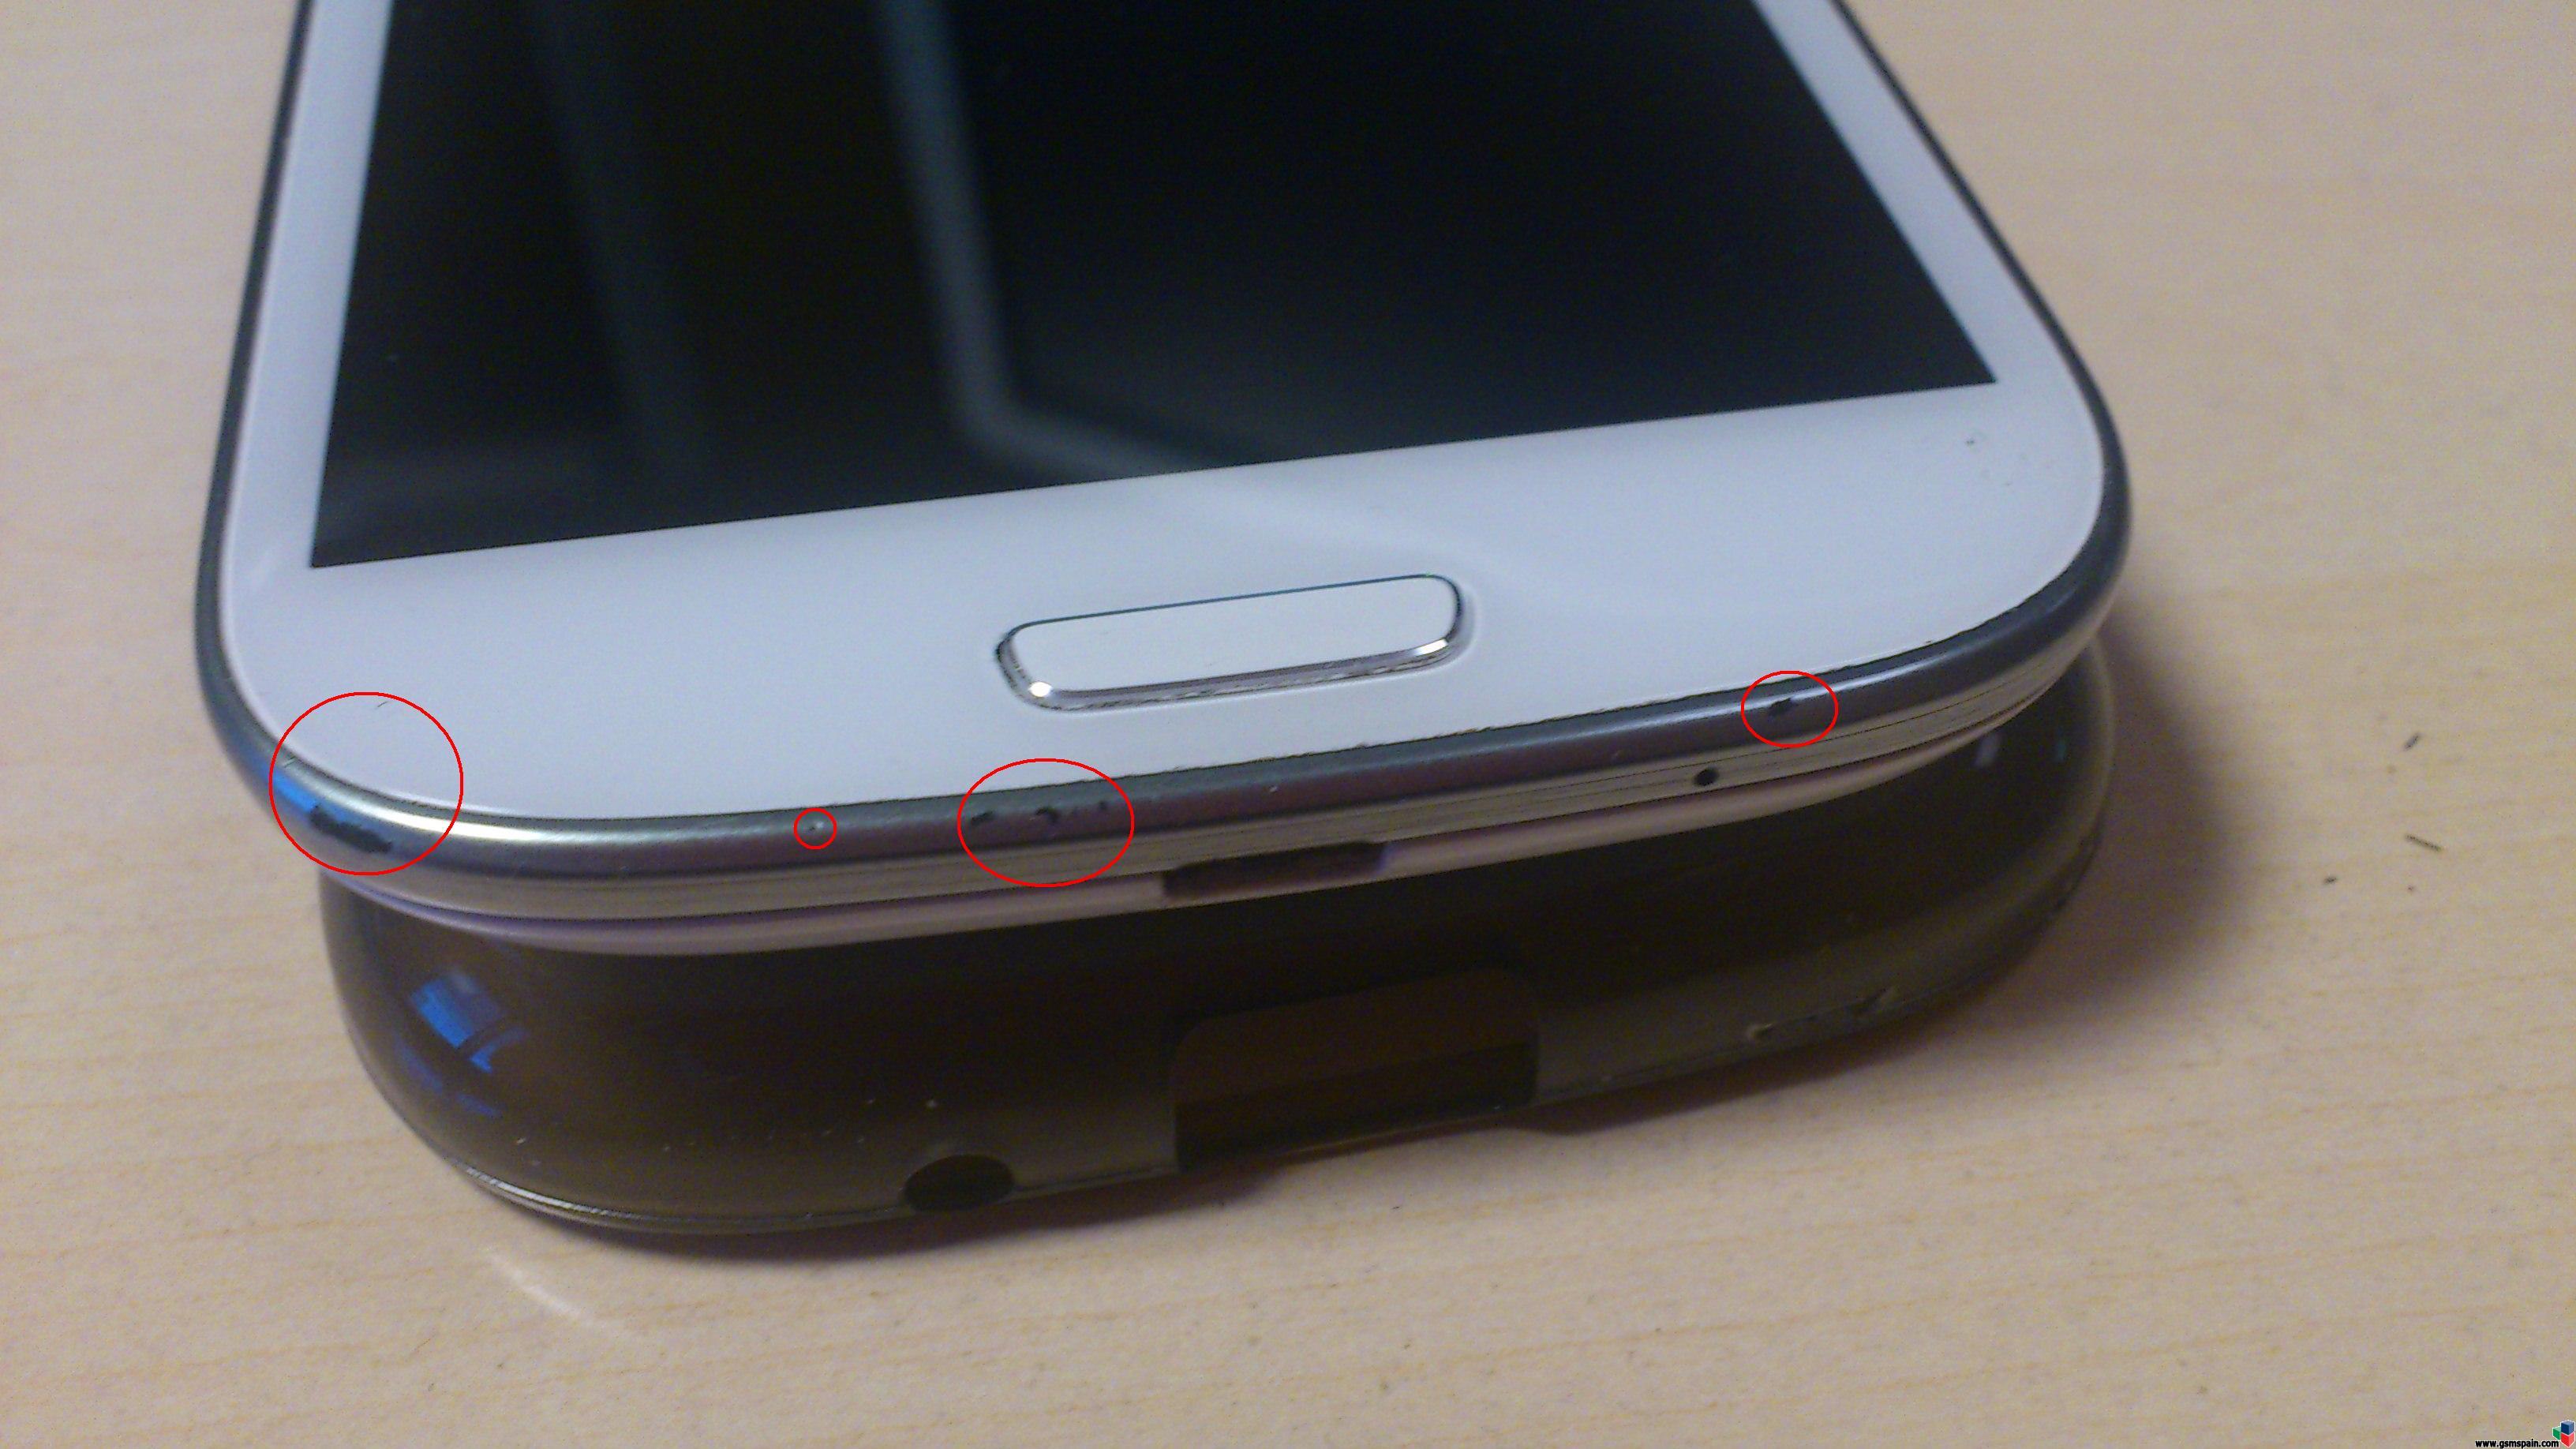 [CAMBIO] Samsung Galaxy S3 libre de origen blanco con desgaste en tapa